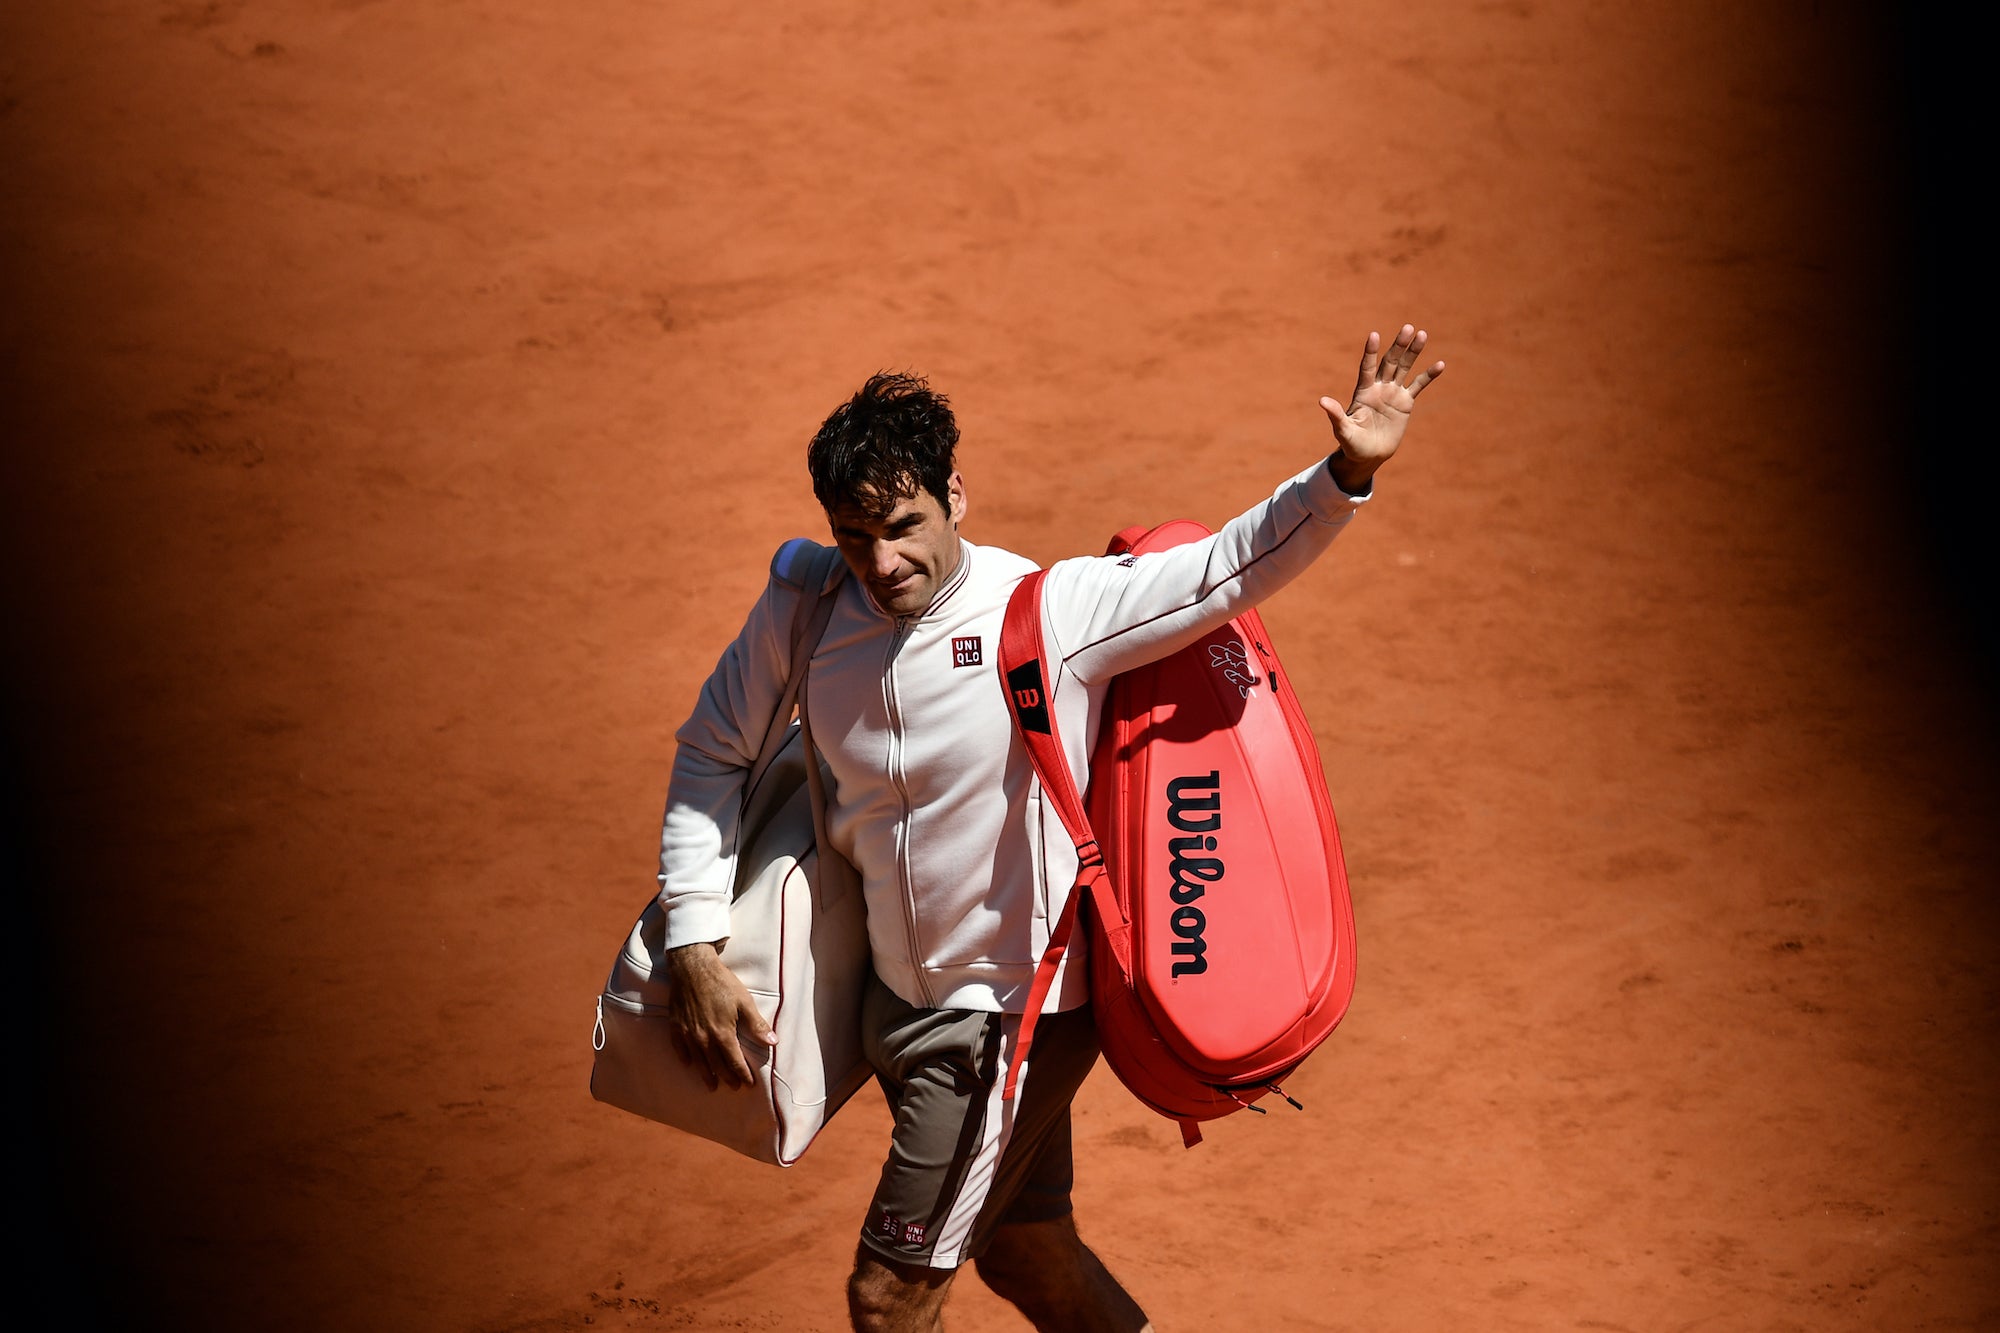 Lettre d’amour à Roger Federer, la plus grande fierté de la Suisse (après la fondue)